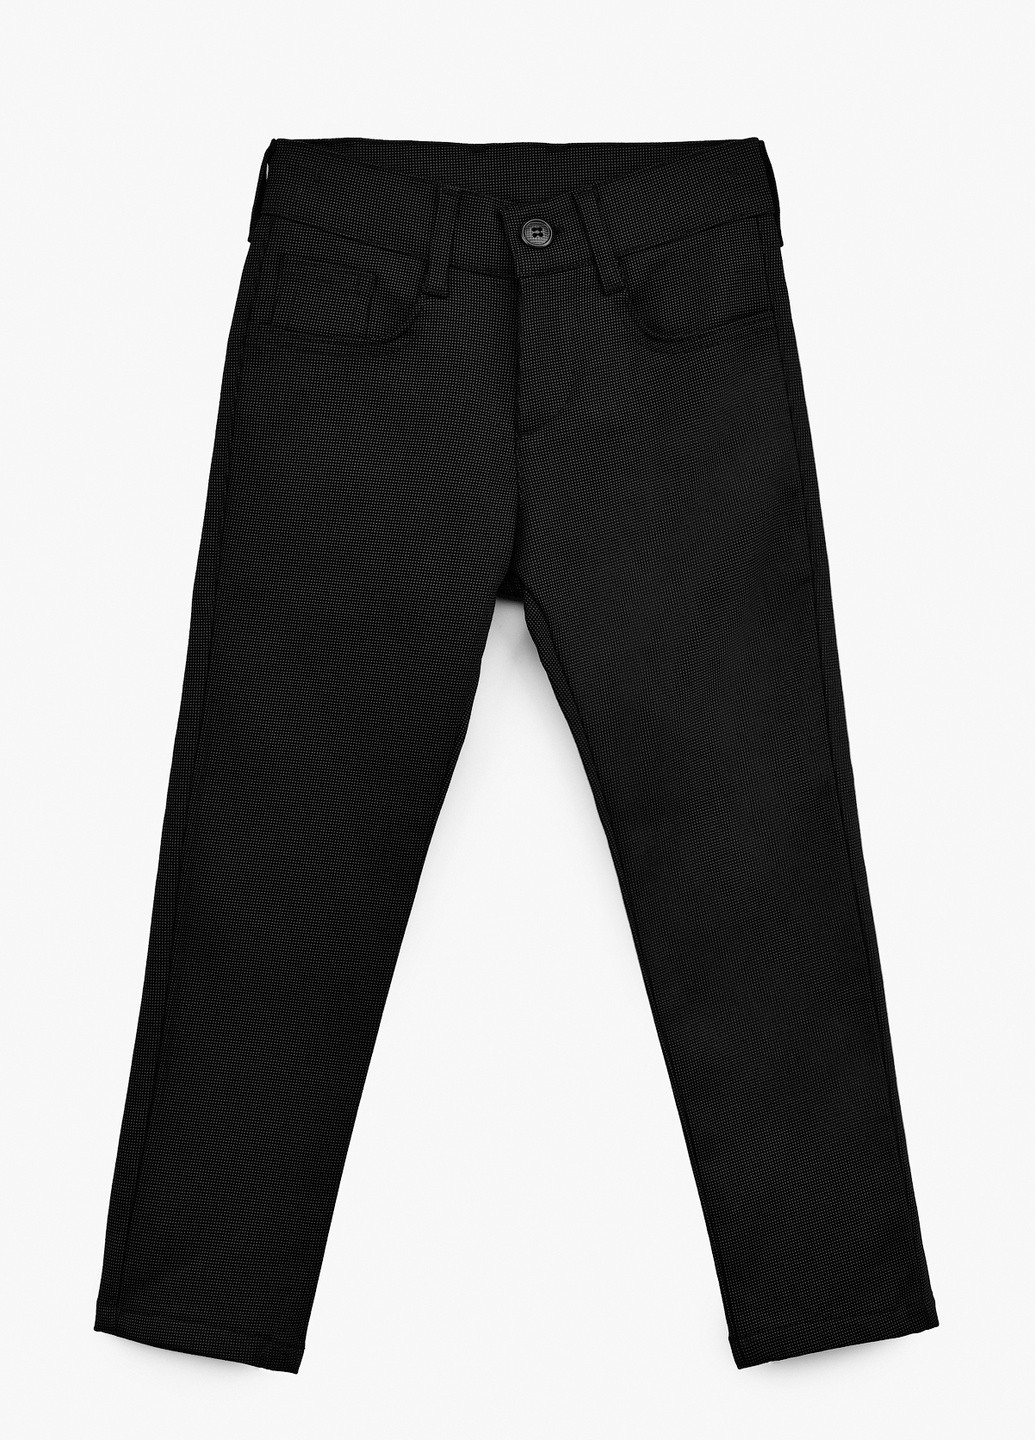 Черные кэжуал зимние брюки Redpolo